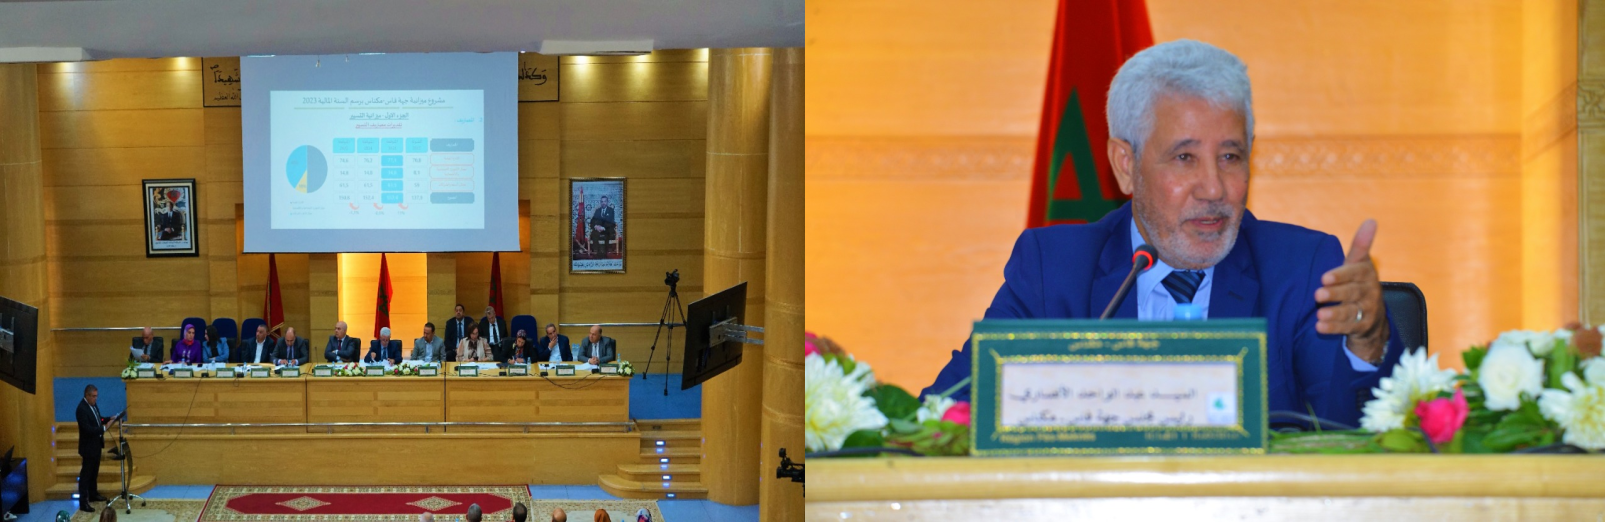 La Session Ordinaire du Conseil de la Région Fès Meknès